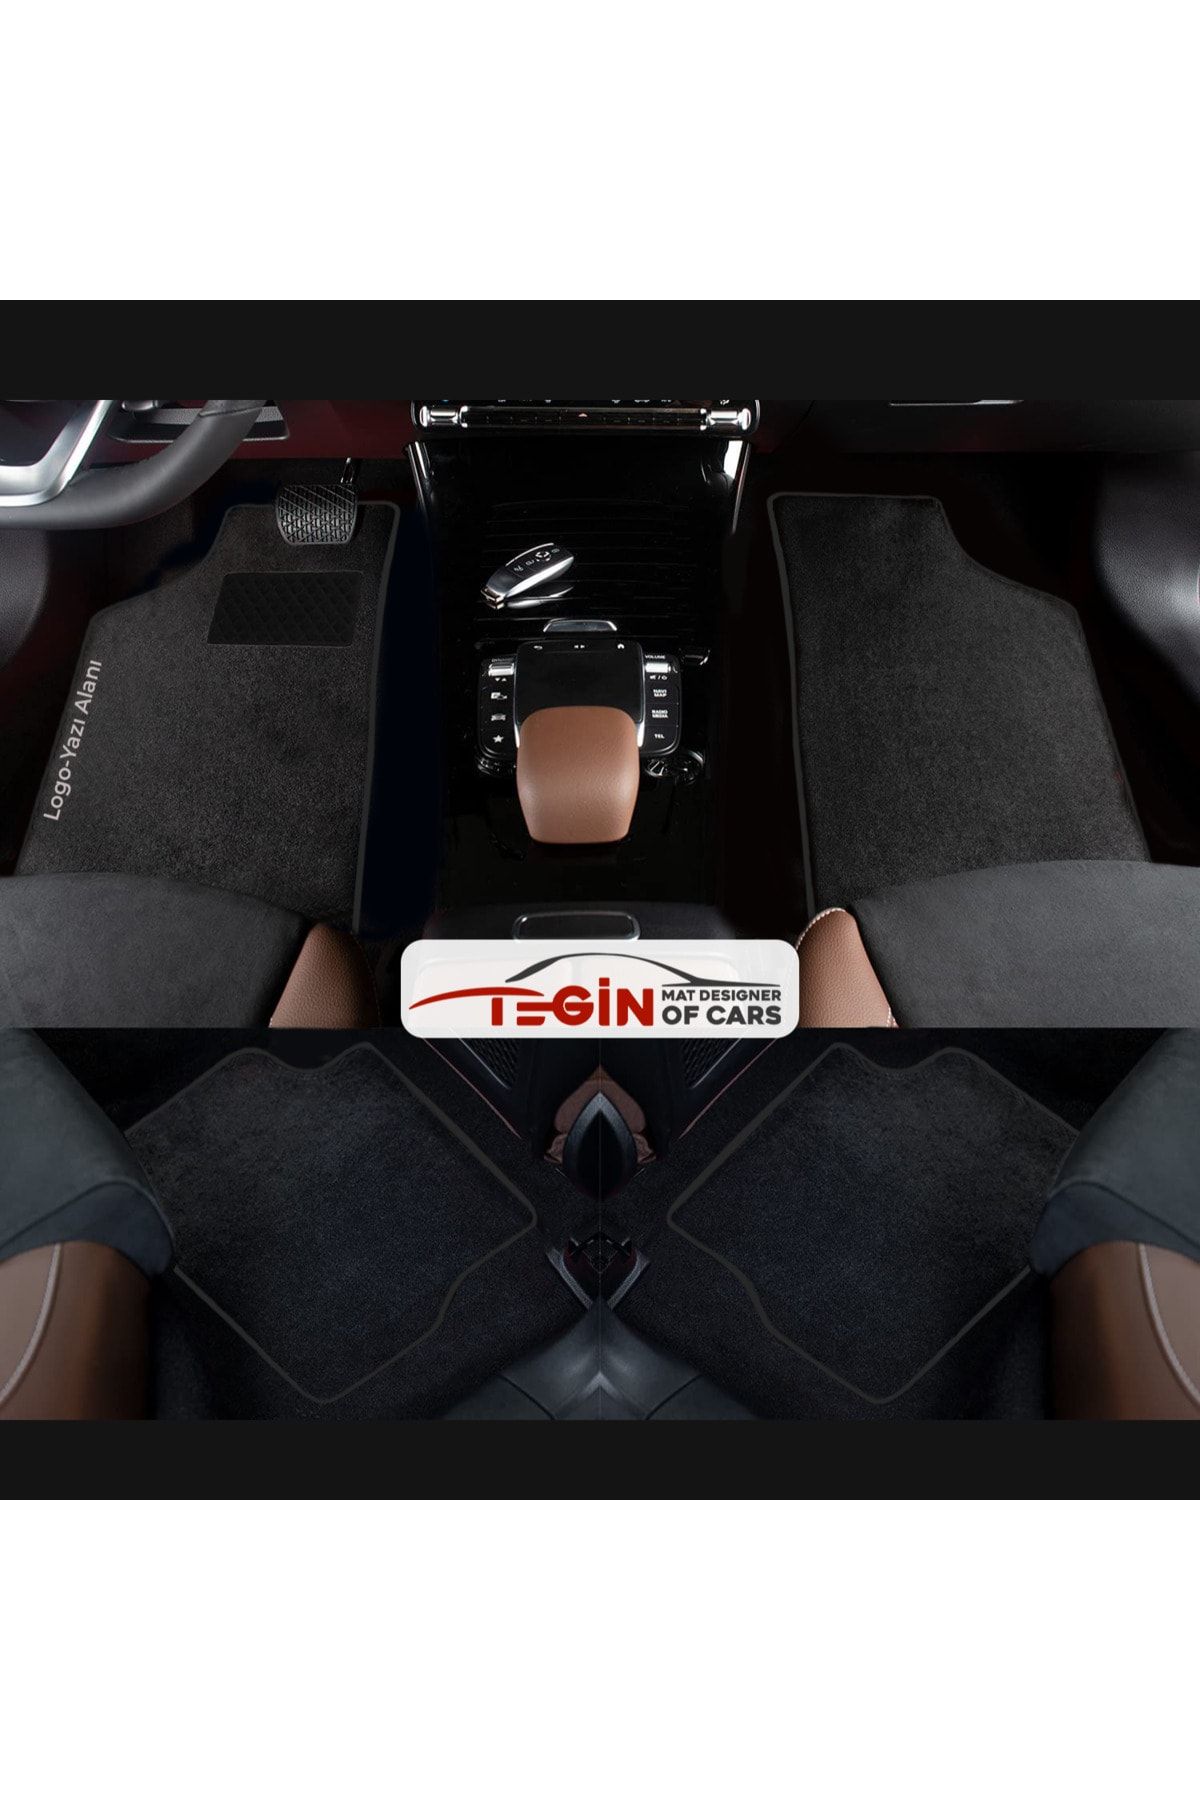 Tegin Mat Designer Of Cars Seat Leon 1p 2006-2012 Aracınıza Özel Prime Siyah Halı Siyah Kenar Halı Paspas